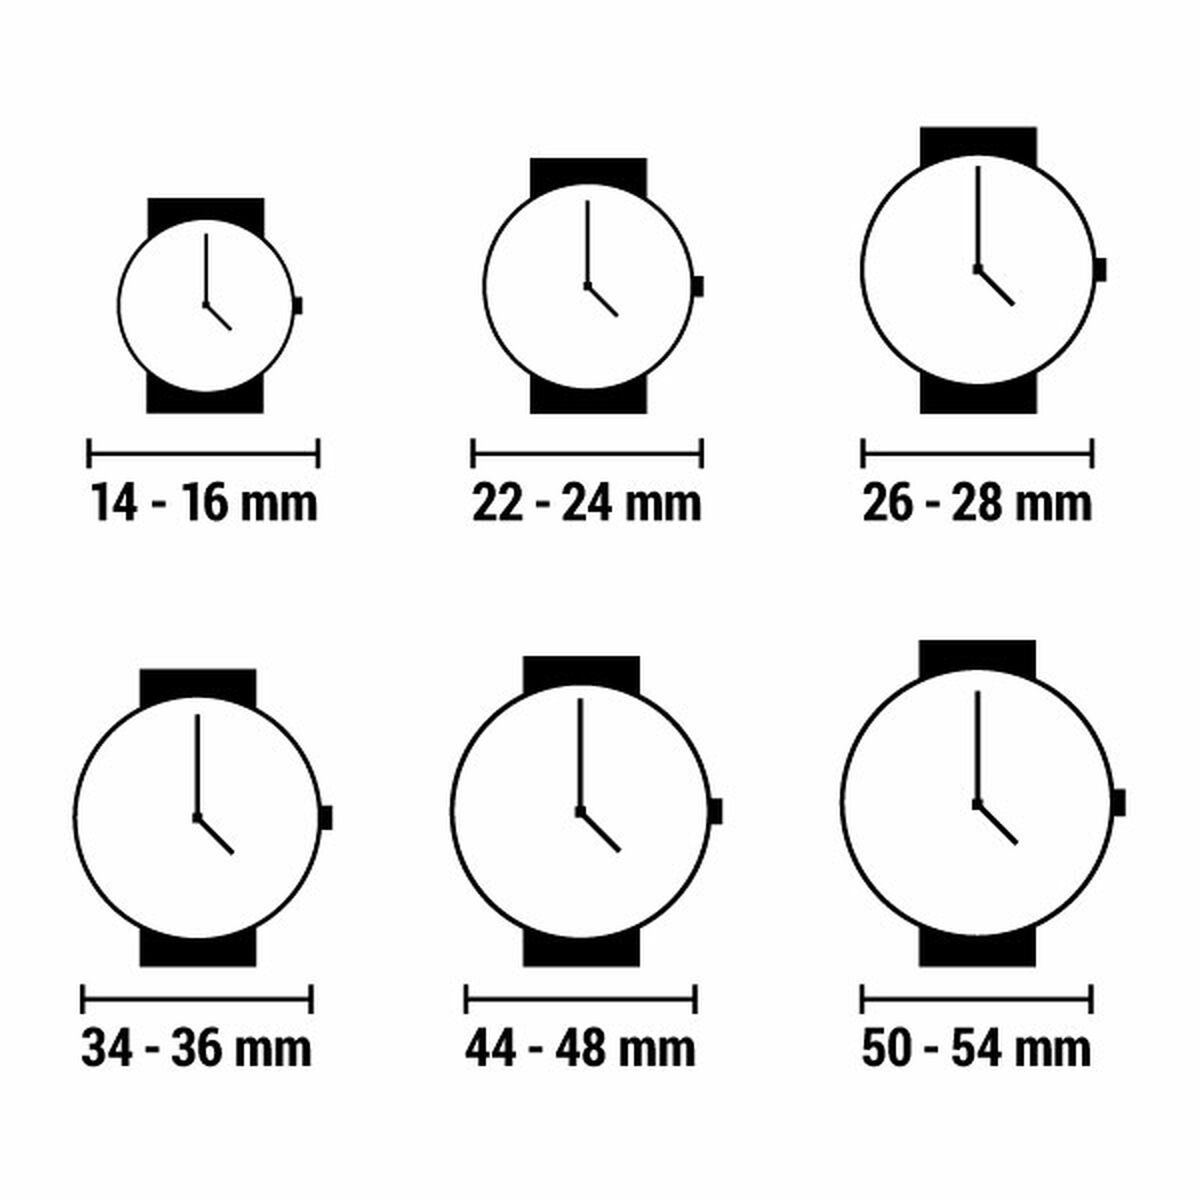 Horloge Dames Guess GW0111L3 (Ø 38 mm)